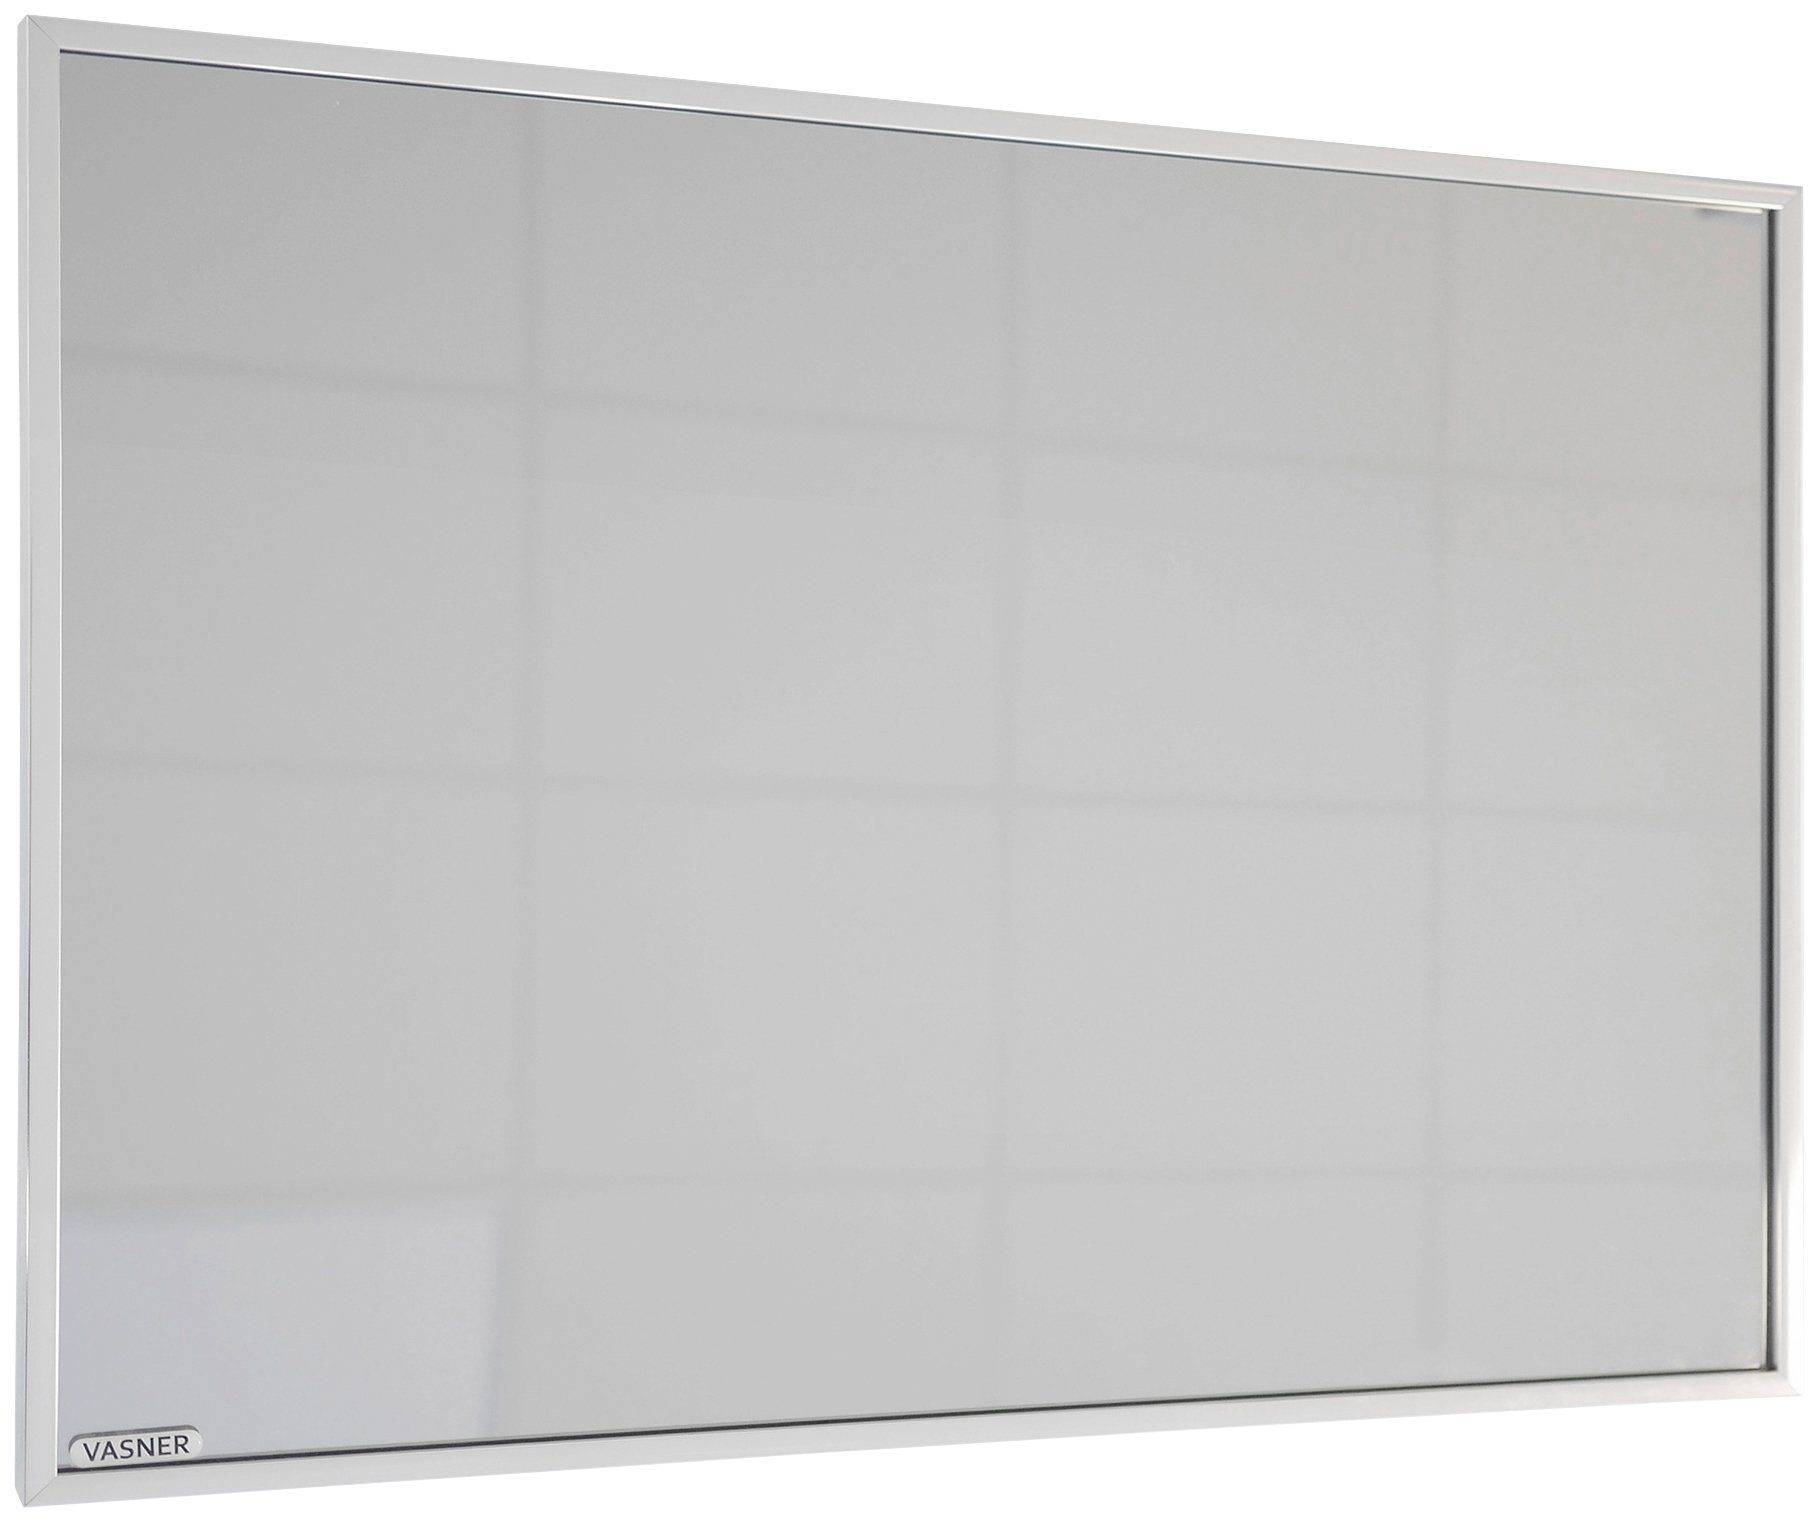 Vasner Infrarotheizung Zipris S 900, 900 W, Spiegelheizung mit Chrom-Rahmen